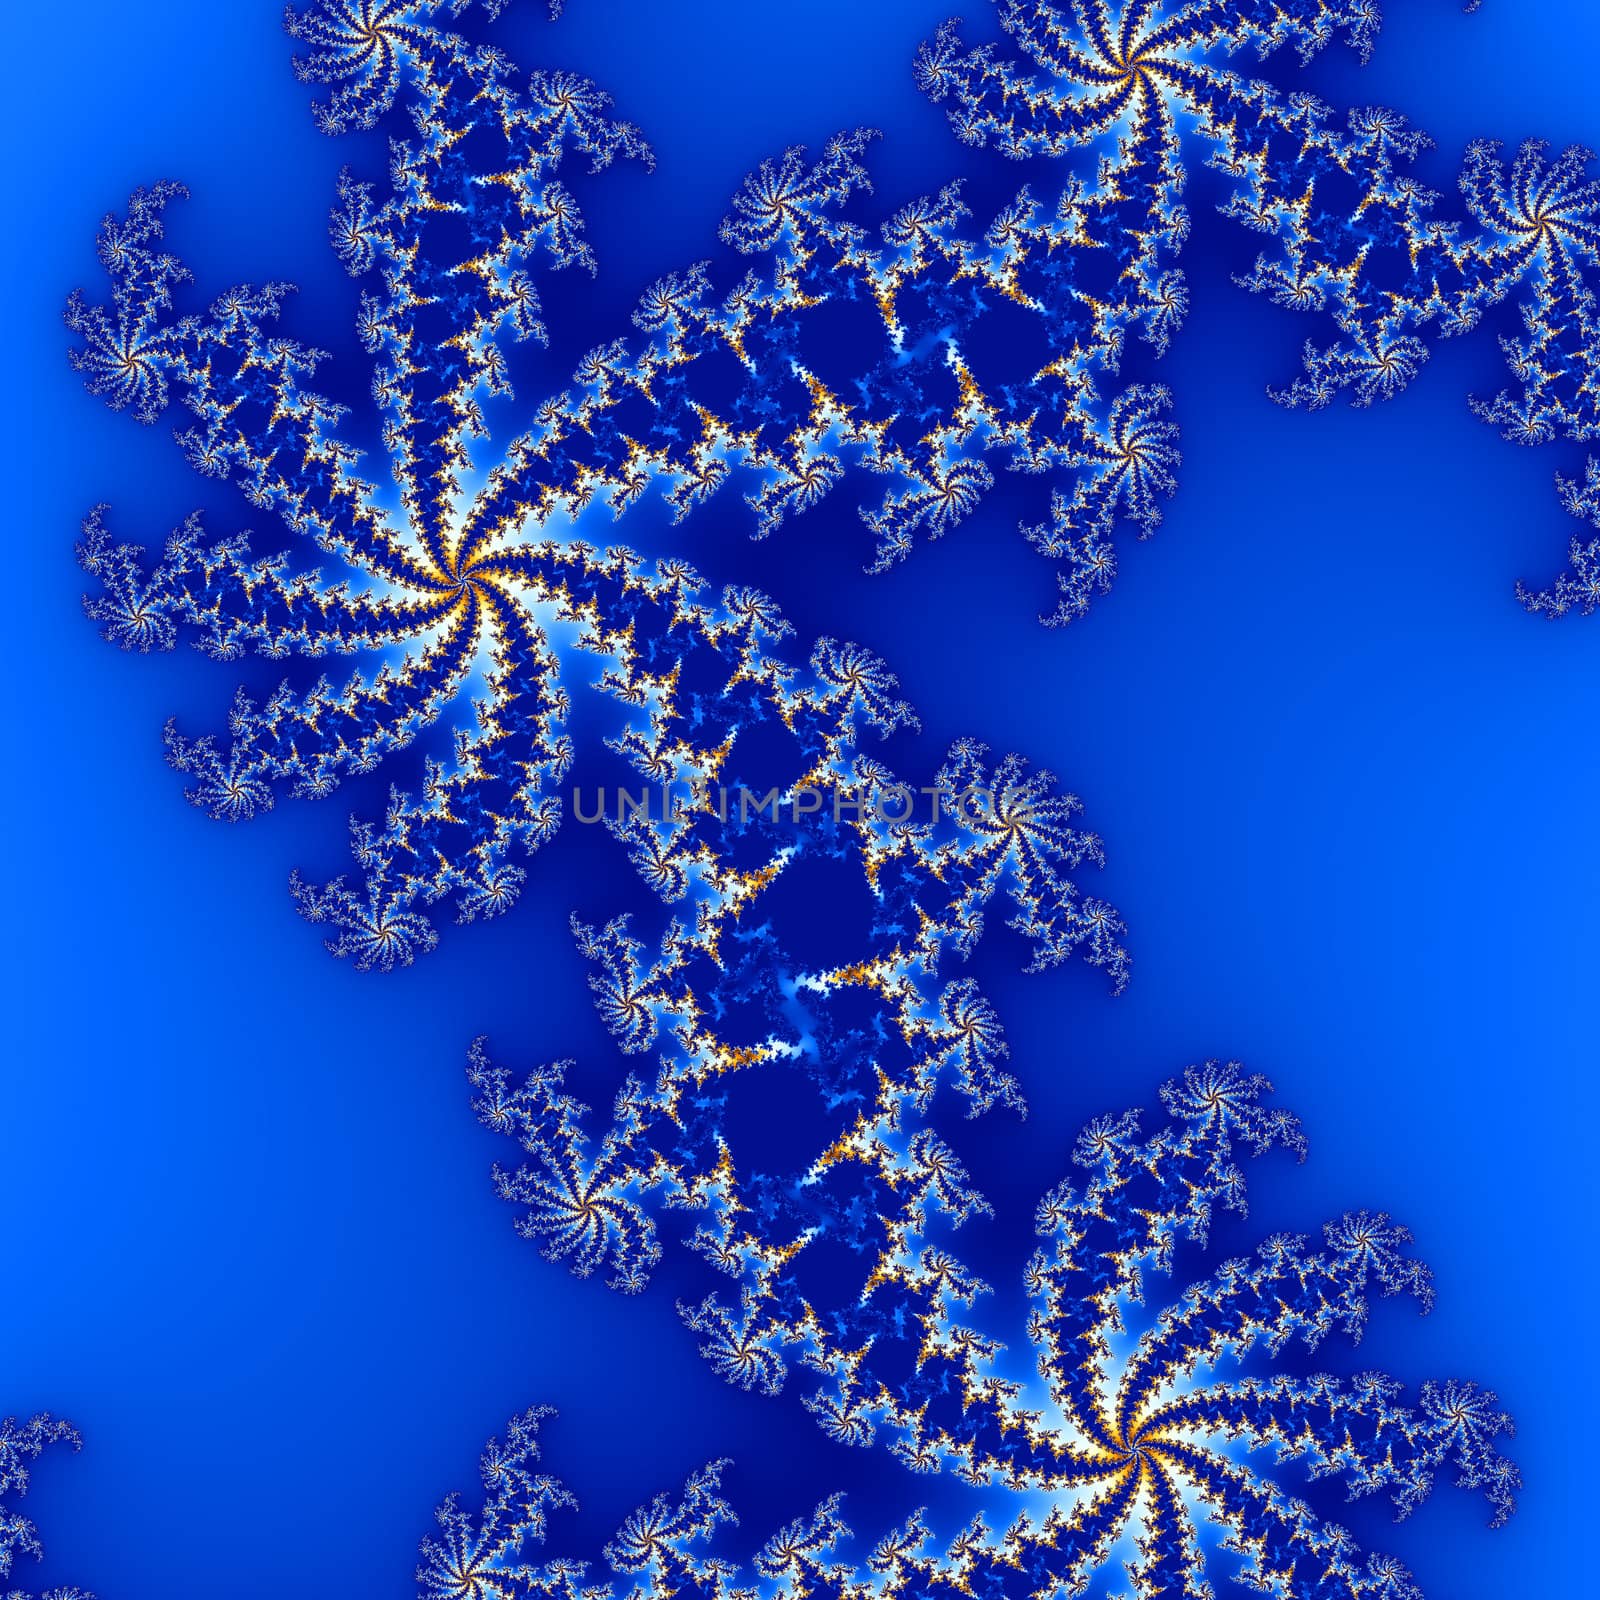 fractal design for background in blue